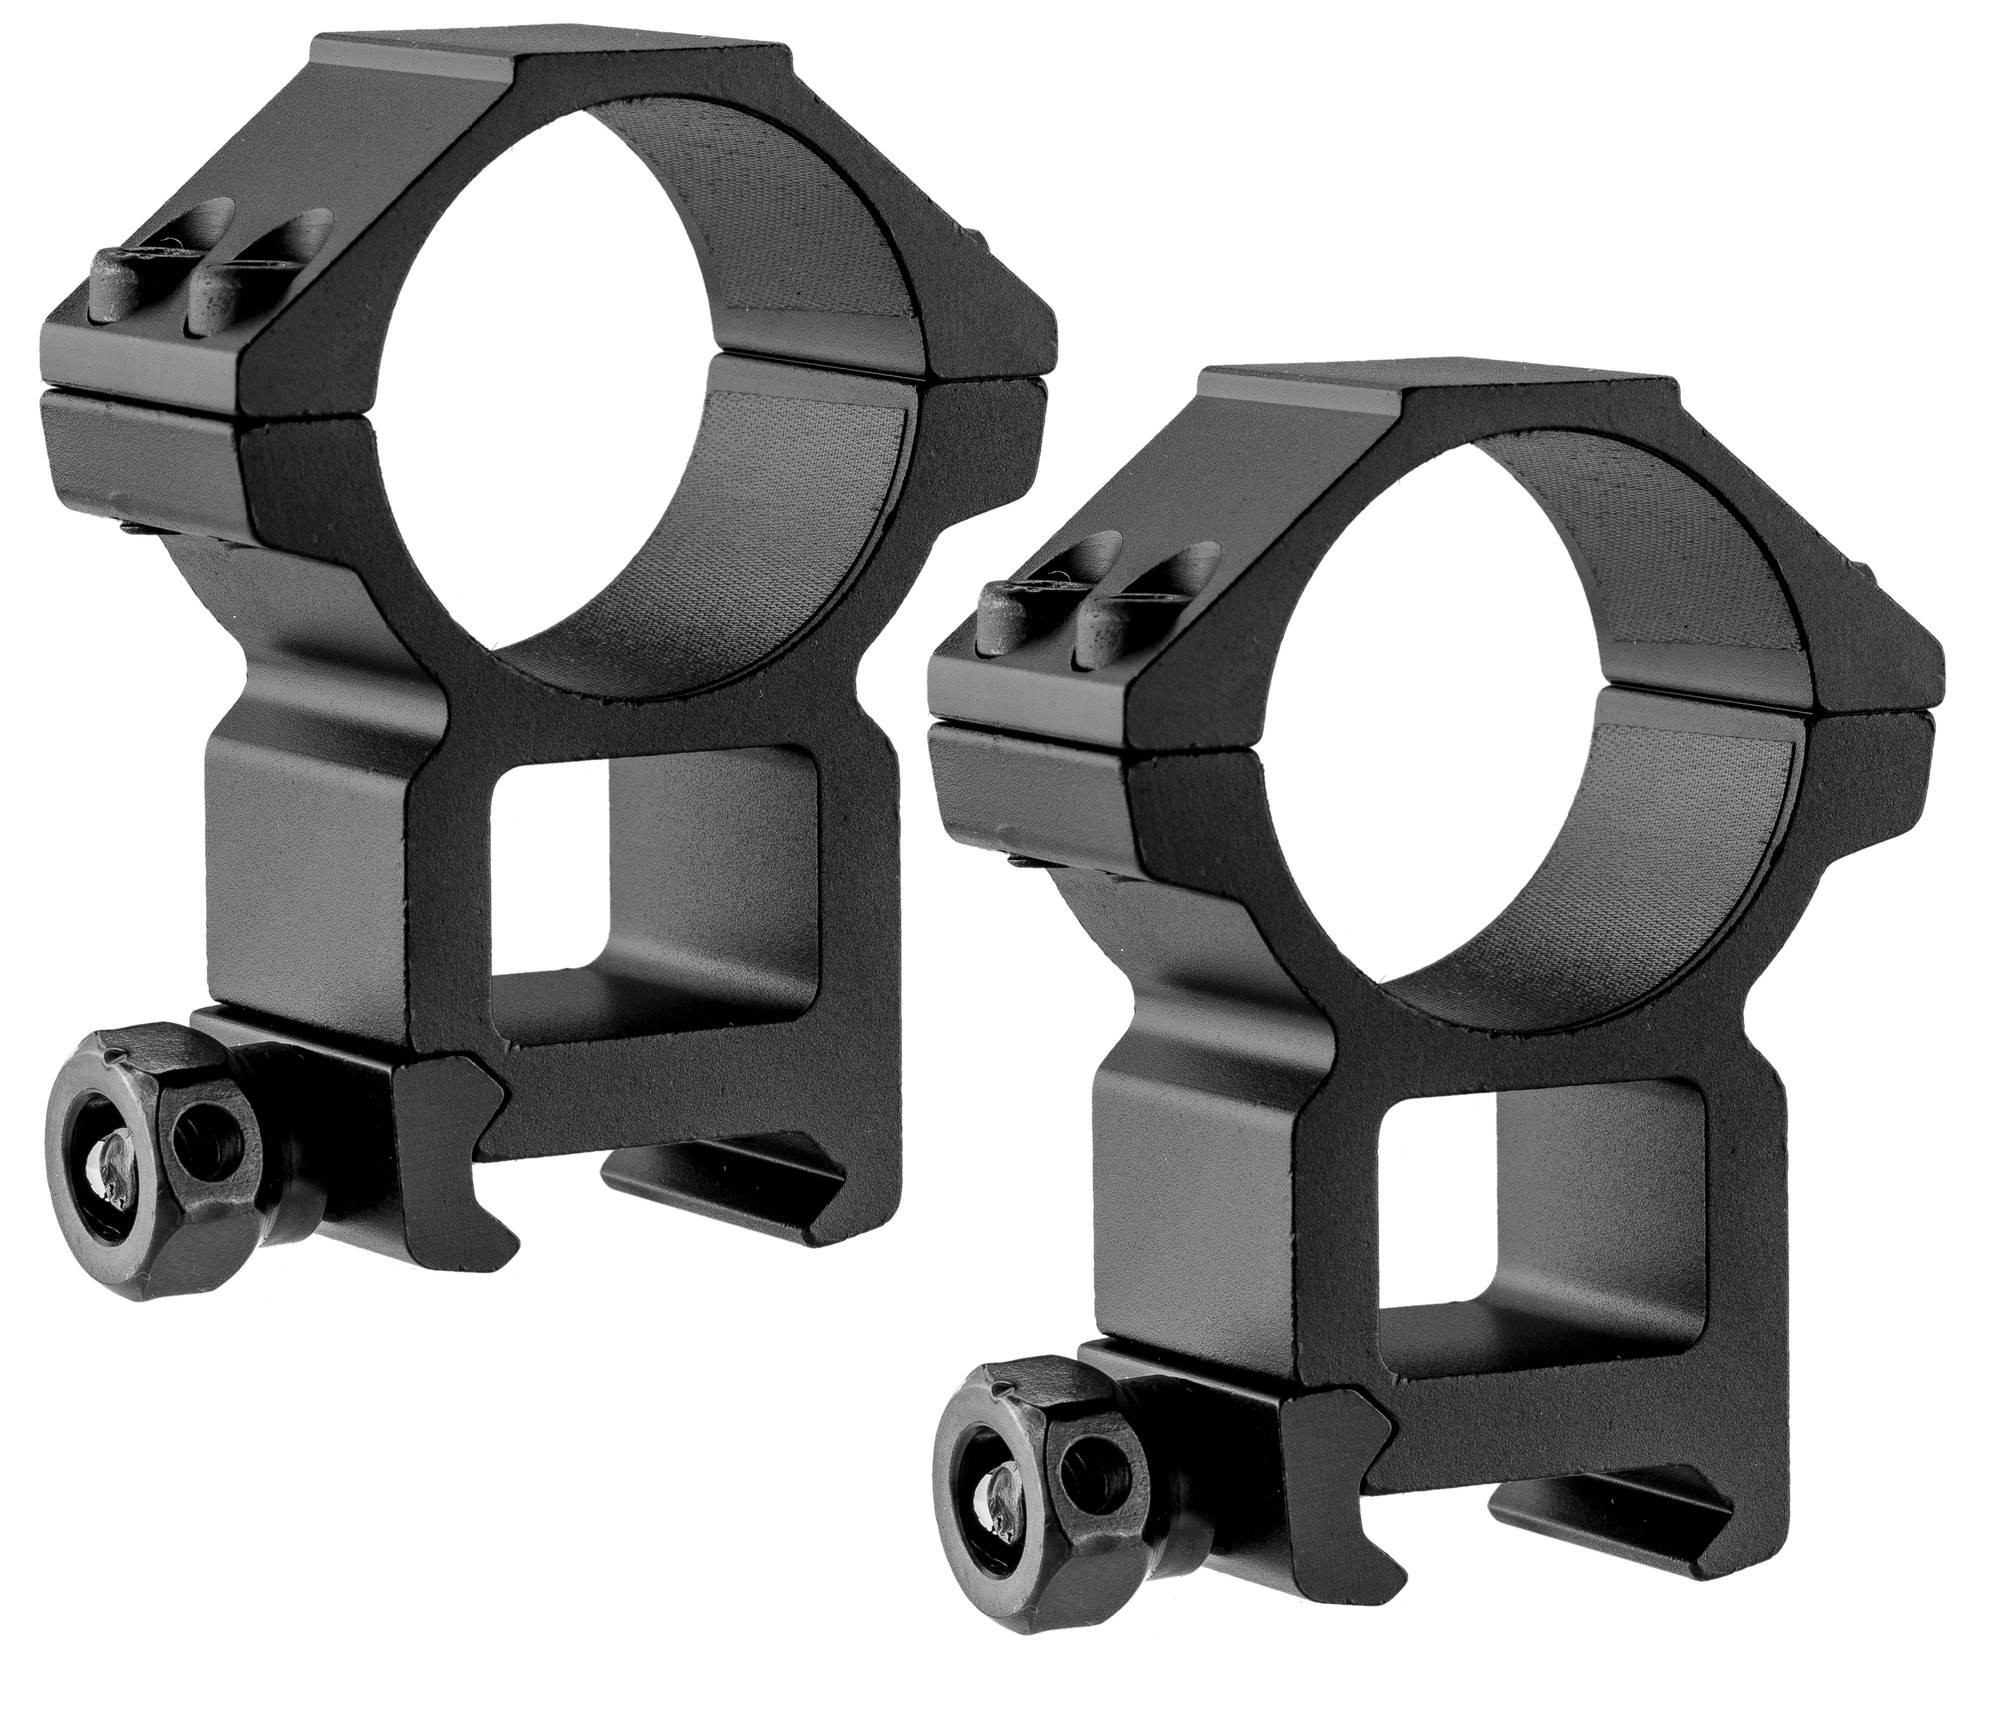 UTG - Montage Haut rail Picatinny pour lunette de visée Ø30mm - Aluminium  CNC - Elite Airsoft